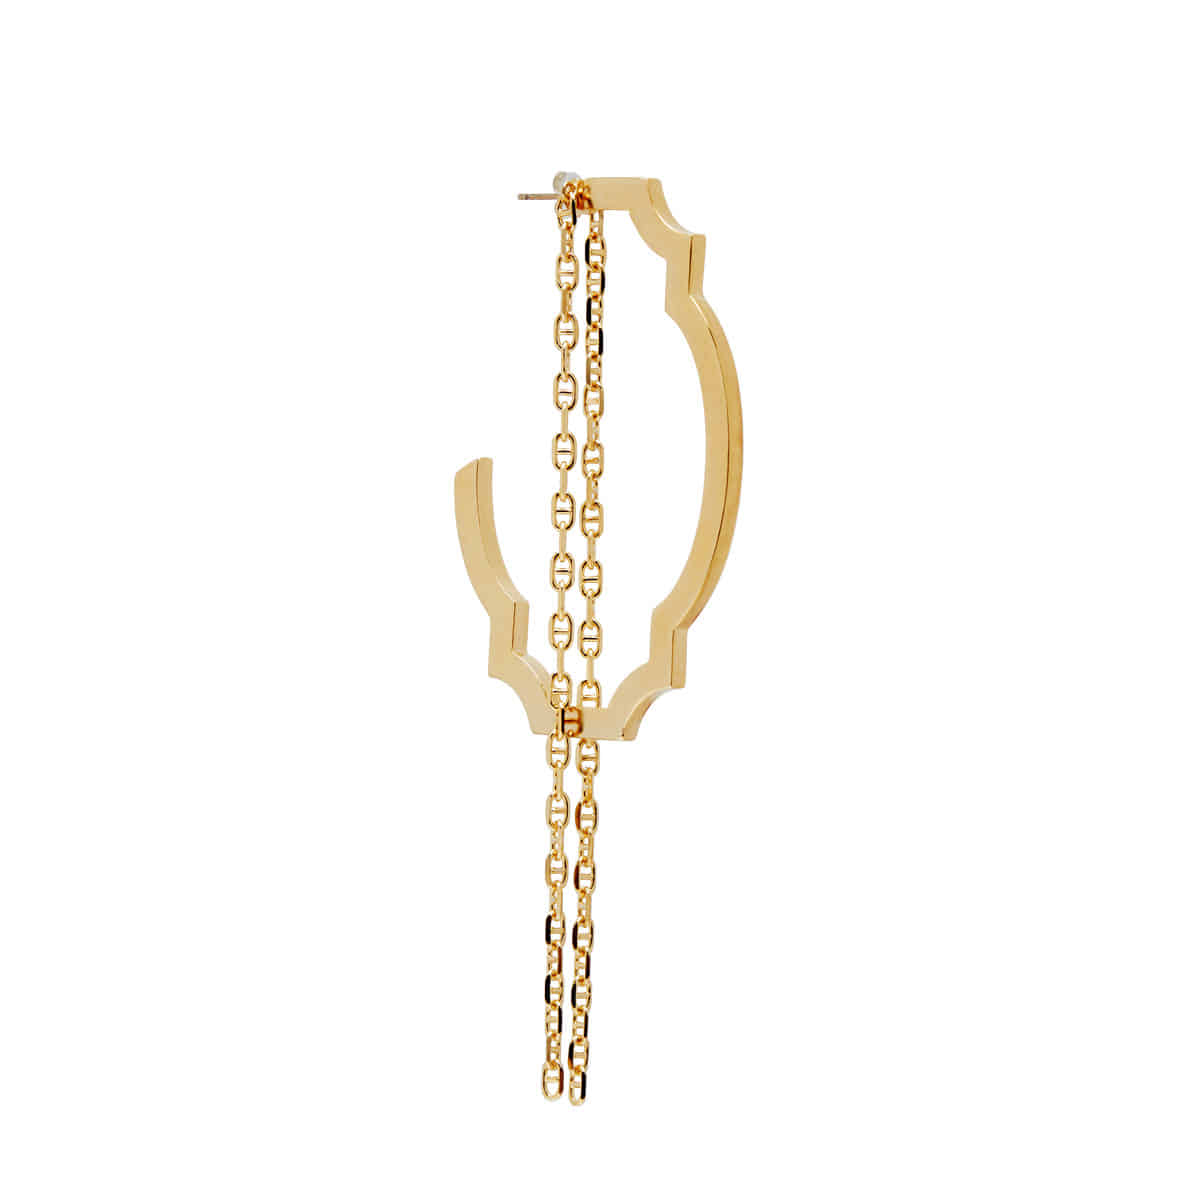 DEDALE earring (GOLD)-Single piece- 